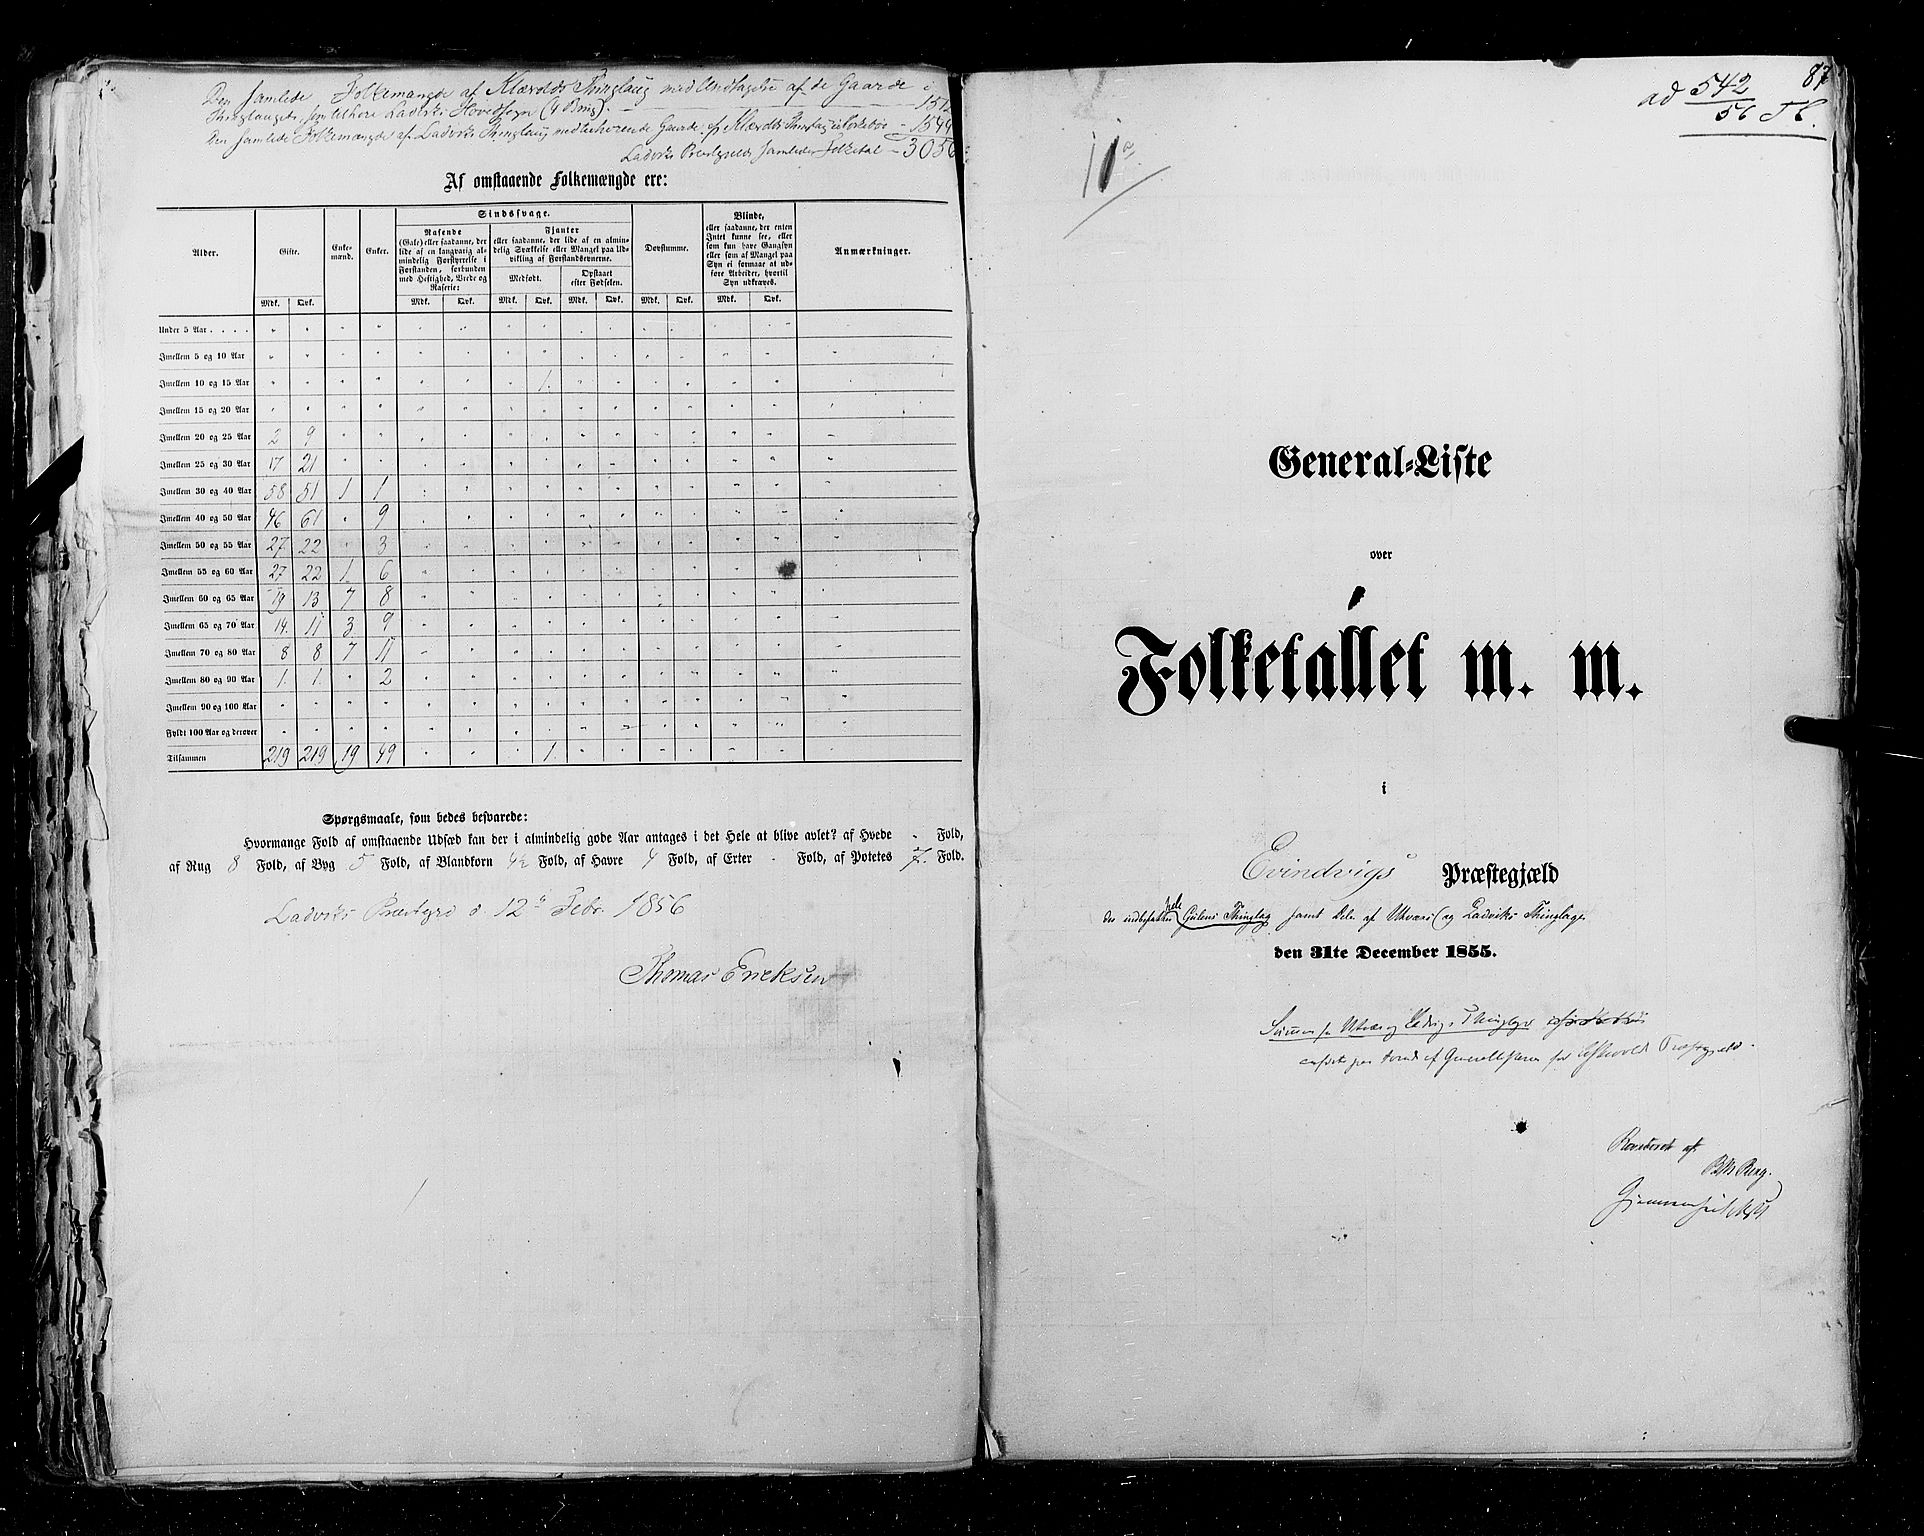 RA, Folketellingen 1855, bind 5: Nordre Bergenhus amt, Romsdal amt og Søndre Trondhjem amt, 1855, s. 87